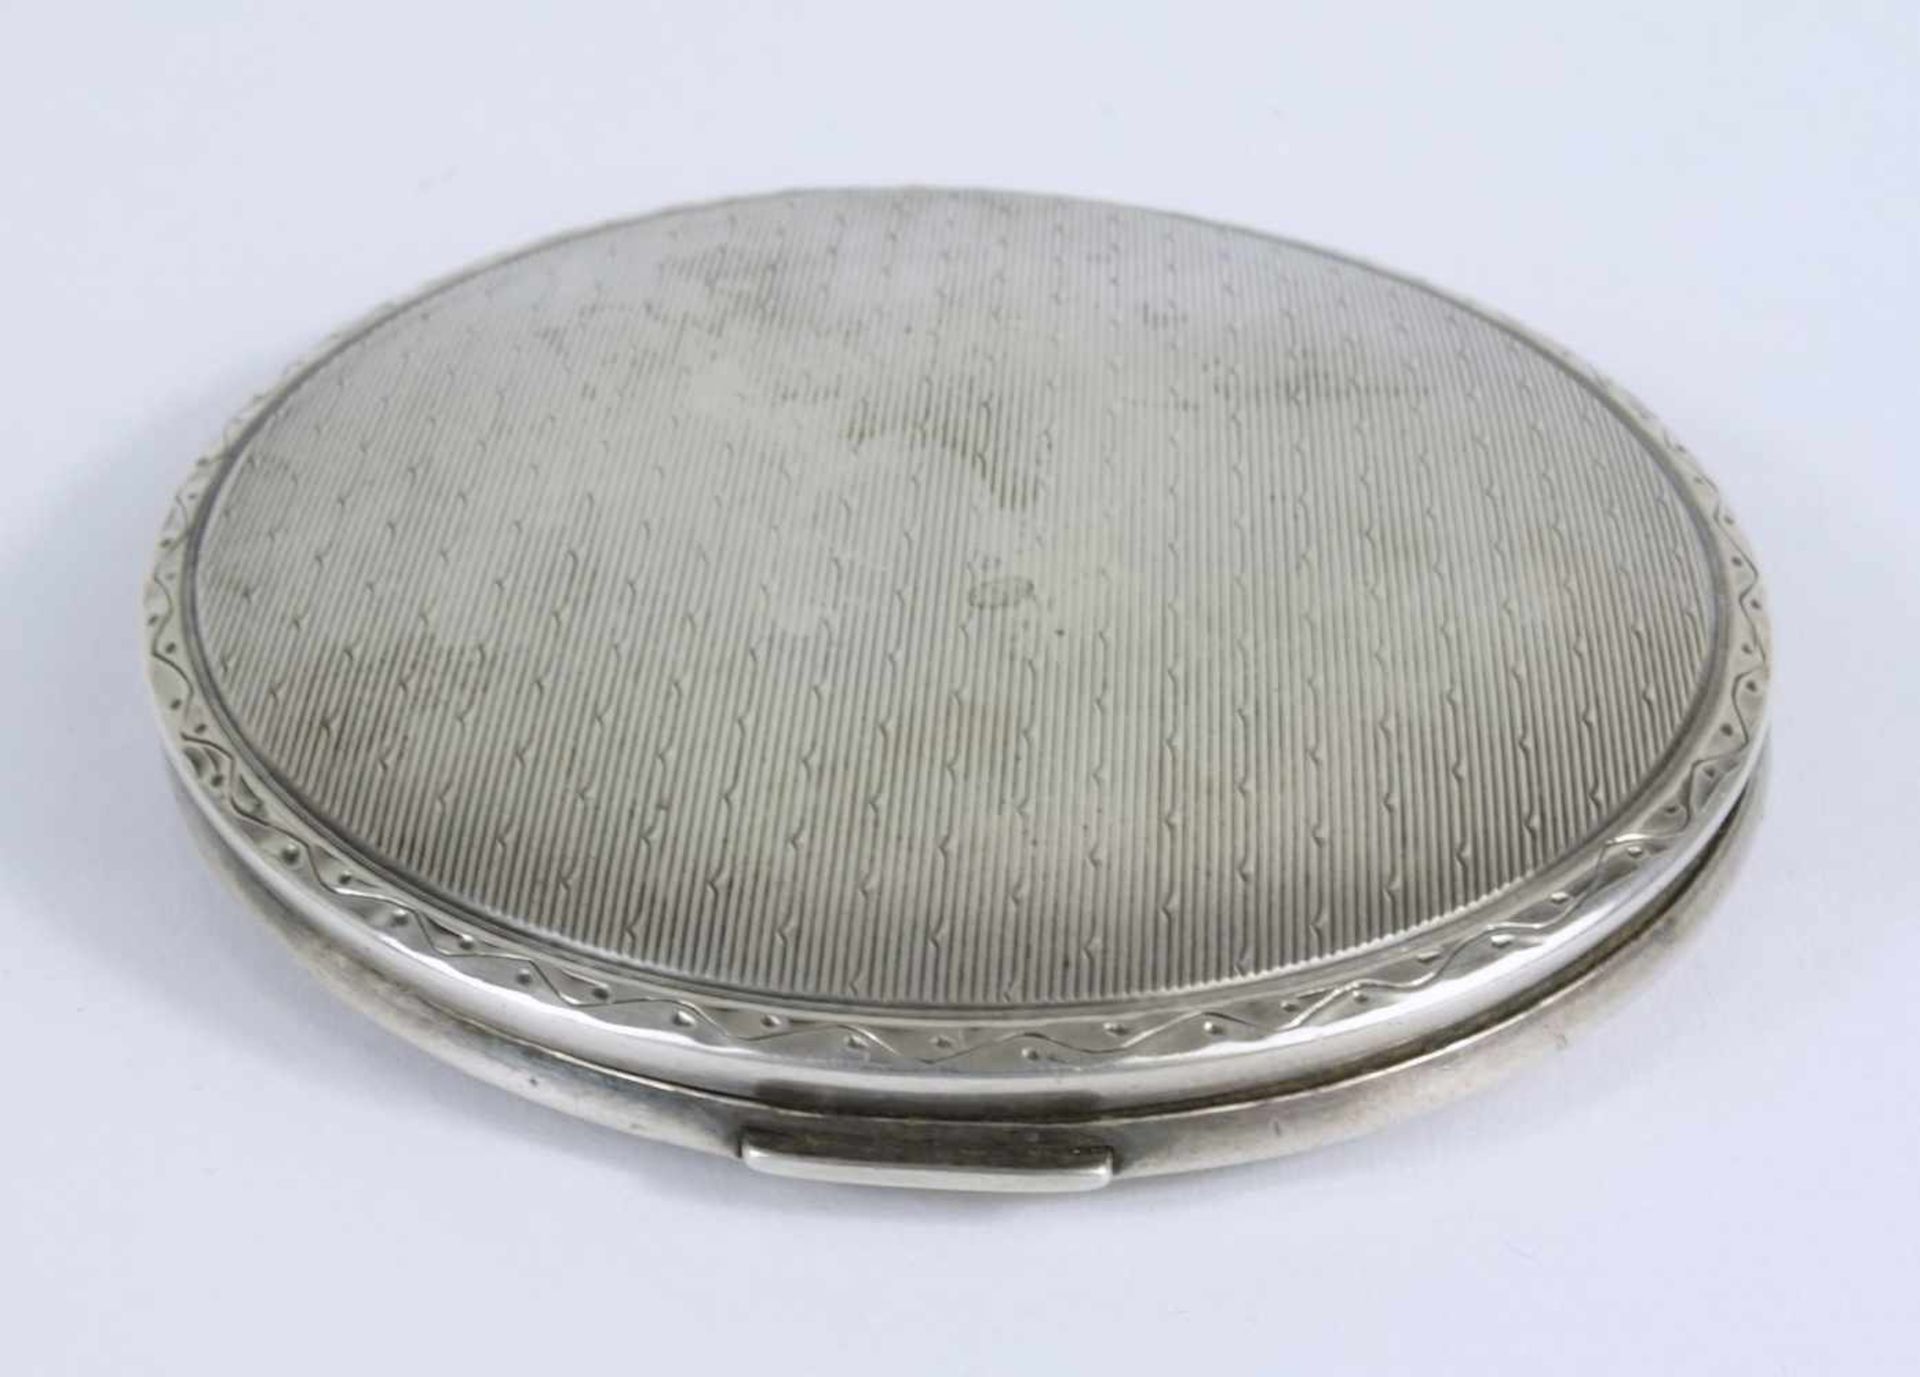 Art-Déco-Puderdose, 925er Silberrund mit Linien-und Punktdekor, innen Fach mit separatem Deckel